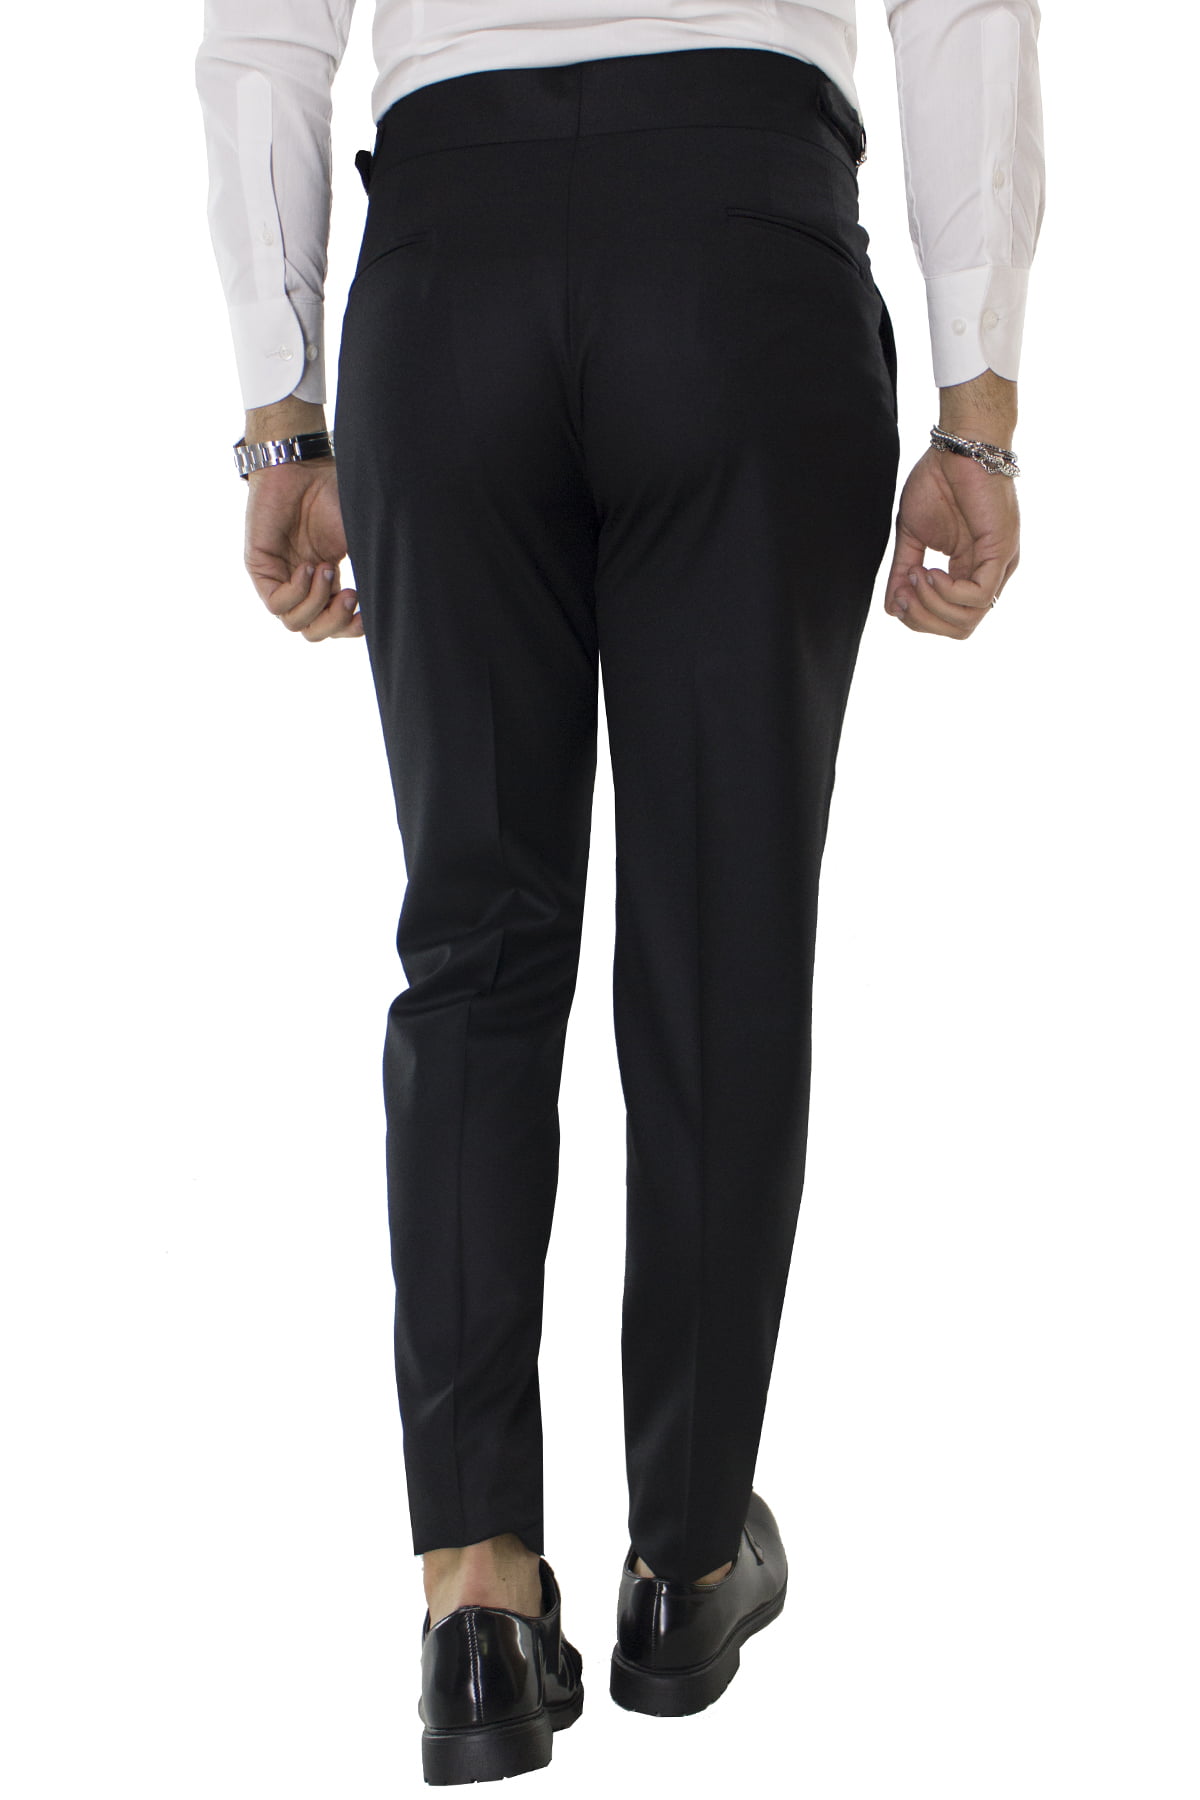 Pantalone uomo nero in lana tinta unita vita alta con pinces fibbie laterali e risvolto 4cm